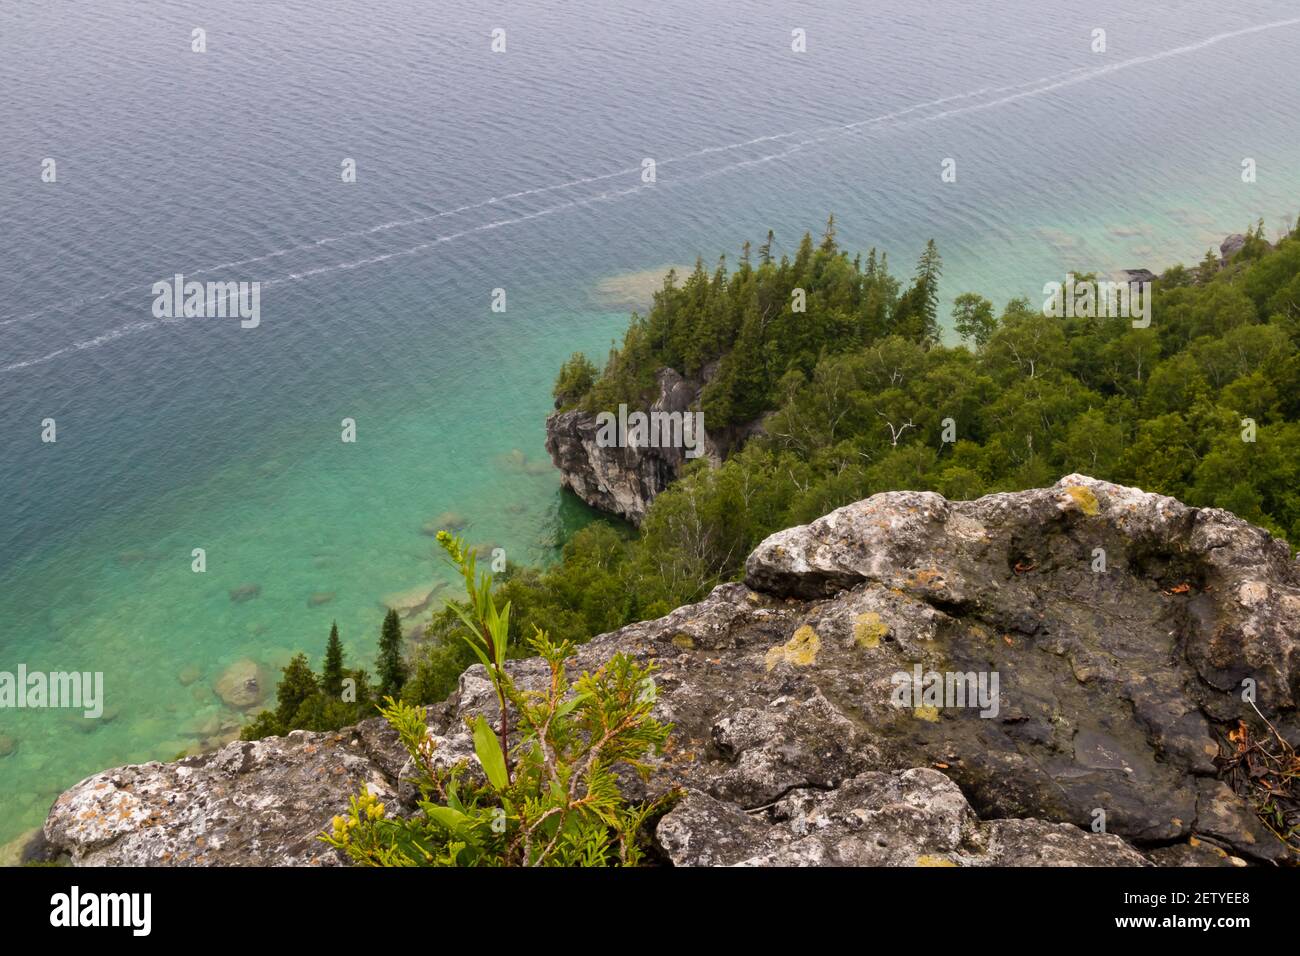 Península Bruce: Un acantilado y un lago con árboles en el fondo Foto de stock